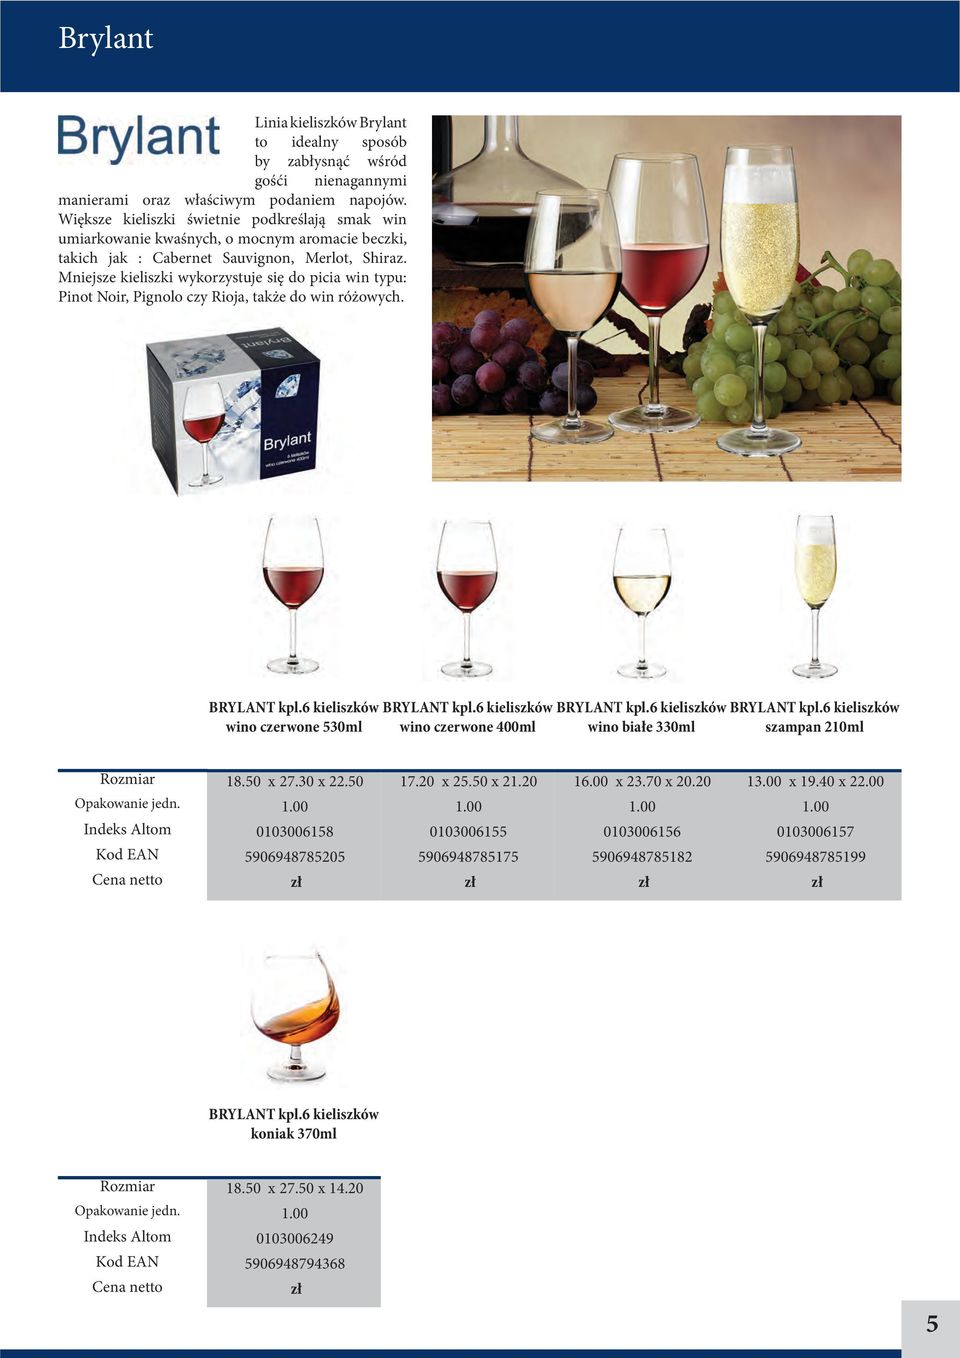 Mniejsze kieliszki wykorzystuje się do picia win typu: Pinot Noir, Pignolo czy Rioja, także do win różowych. BRYLANT kpl.6 kieliszków wino czerwone 530ml BRYLANT kpl.